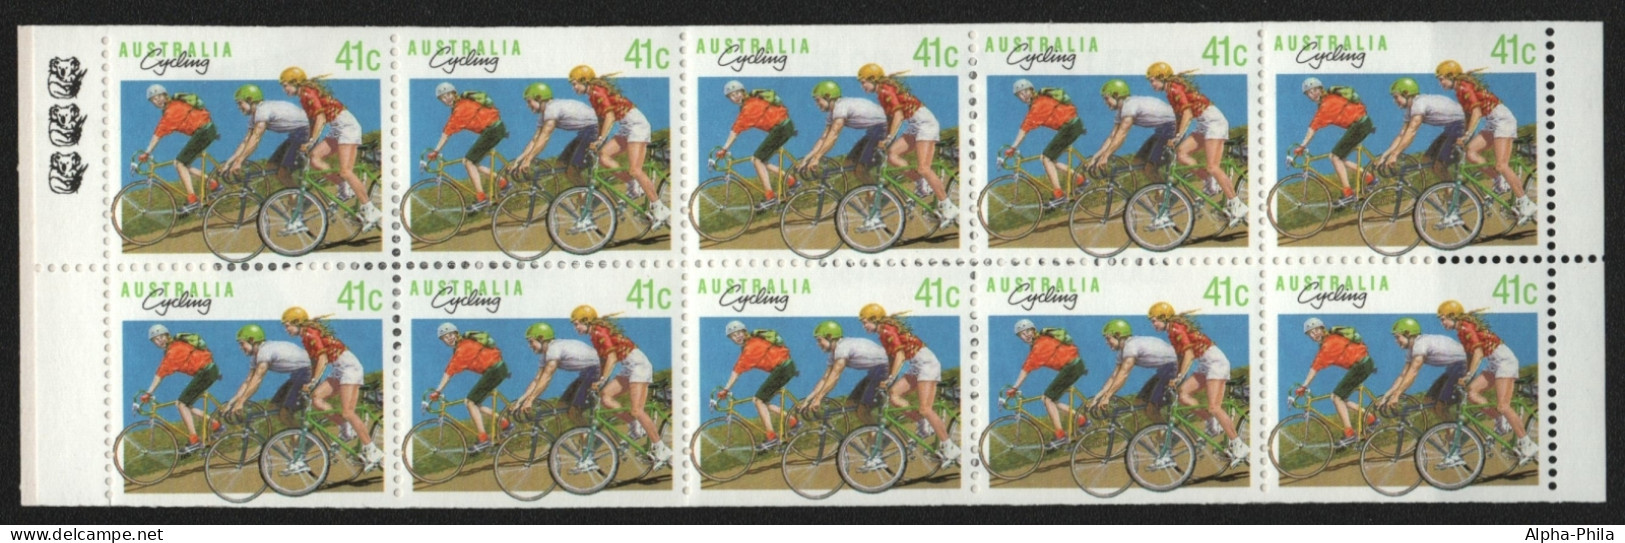 Australien 1989 - Mi-Nr. 1165 D ** - MNH - MH 0-63 - Radsport - Markenheftchen